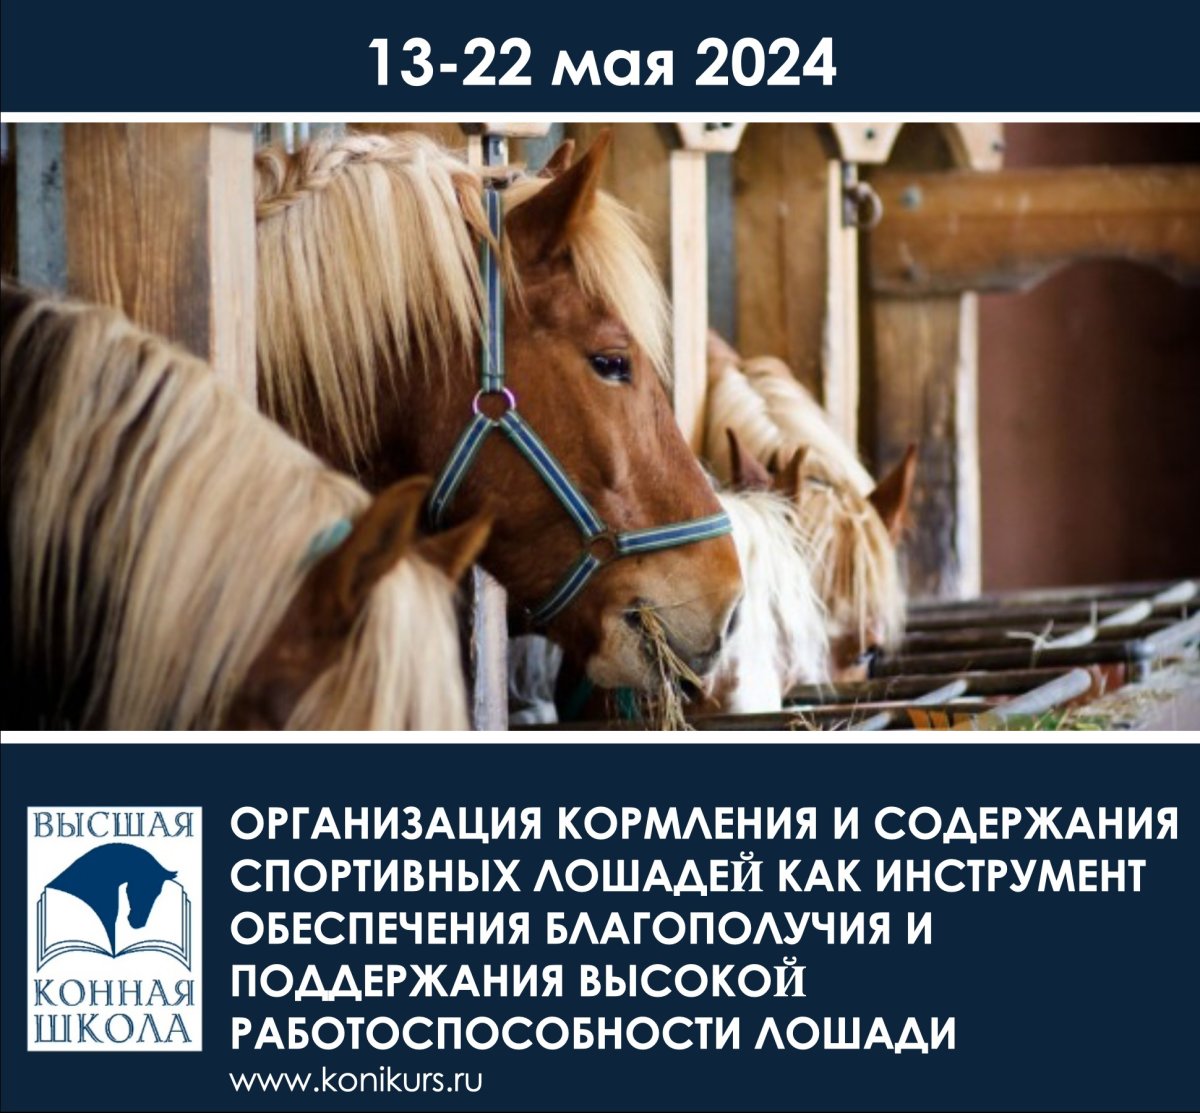 Про содержание и кормление лошадей расскажет доцент аграрного университета Ольга Шараськина